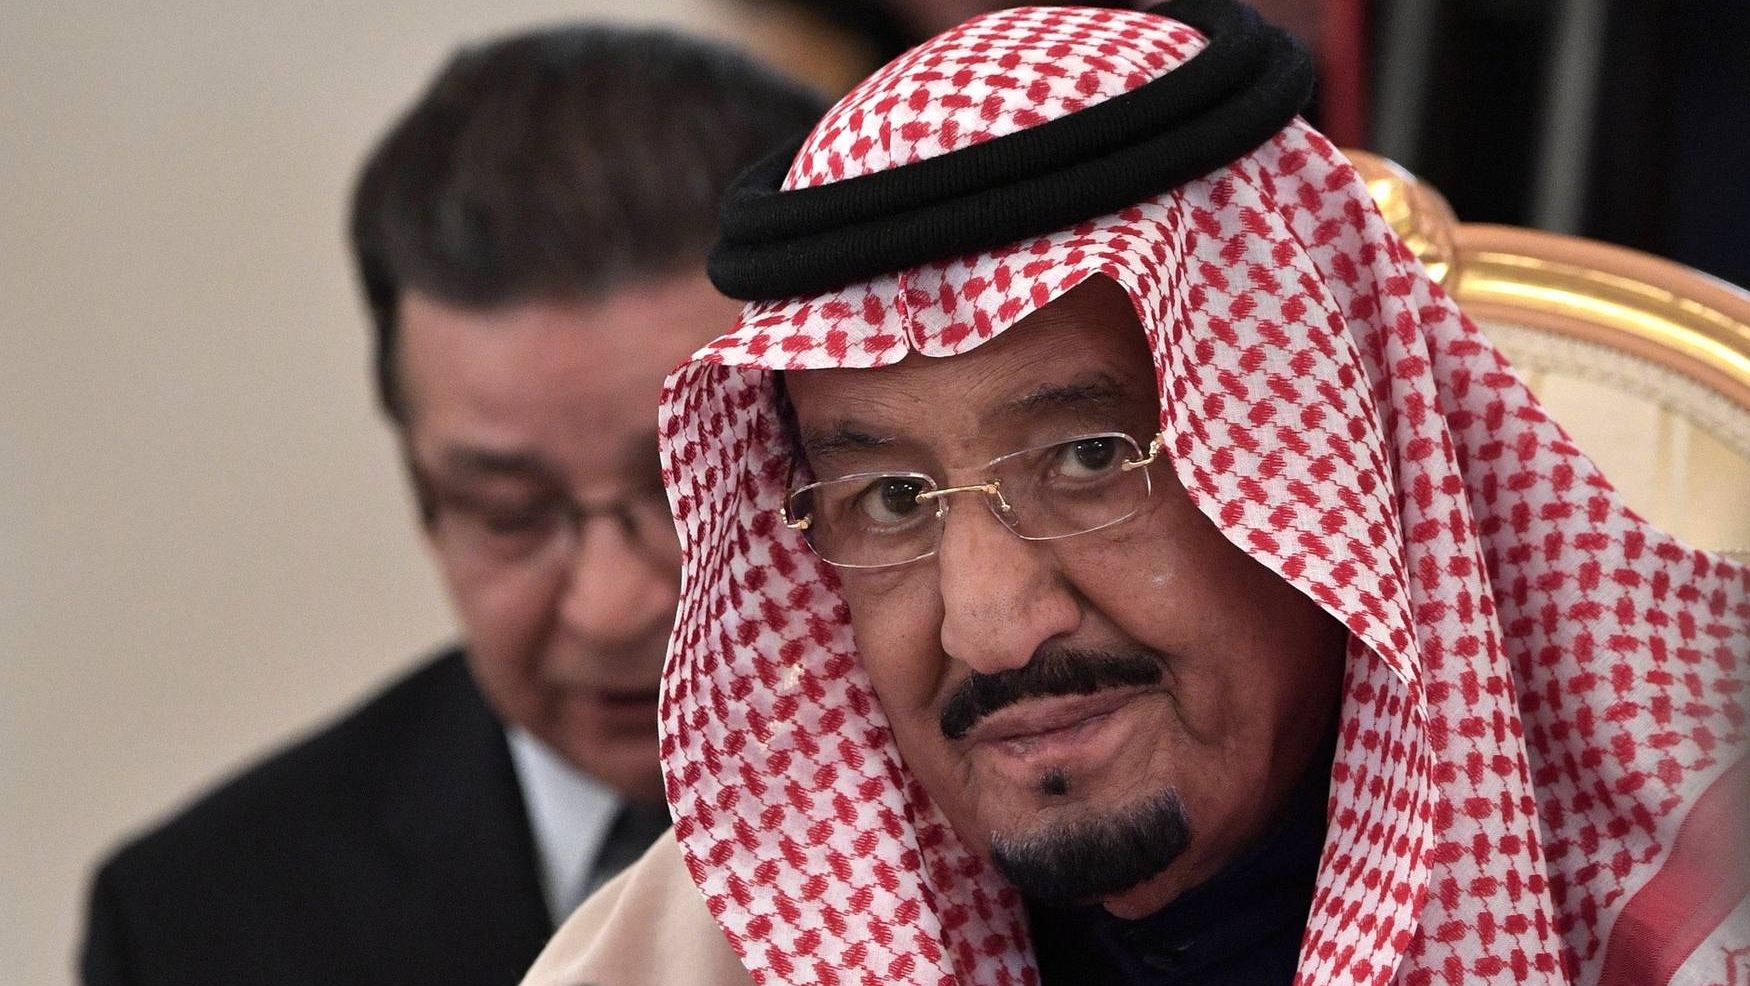 Король Саудовской Аравии Сальман Бен Абдель Азиз Аль Сауд